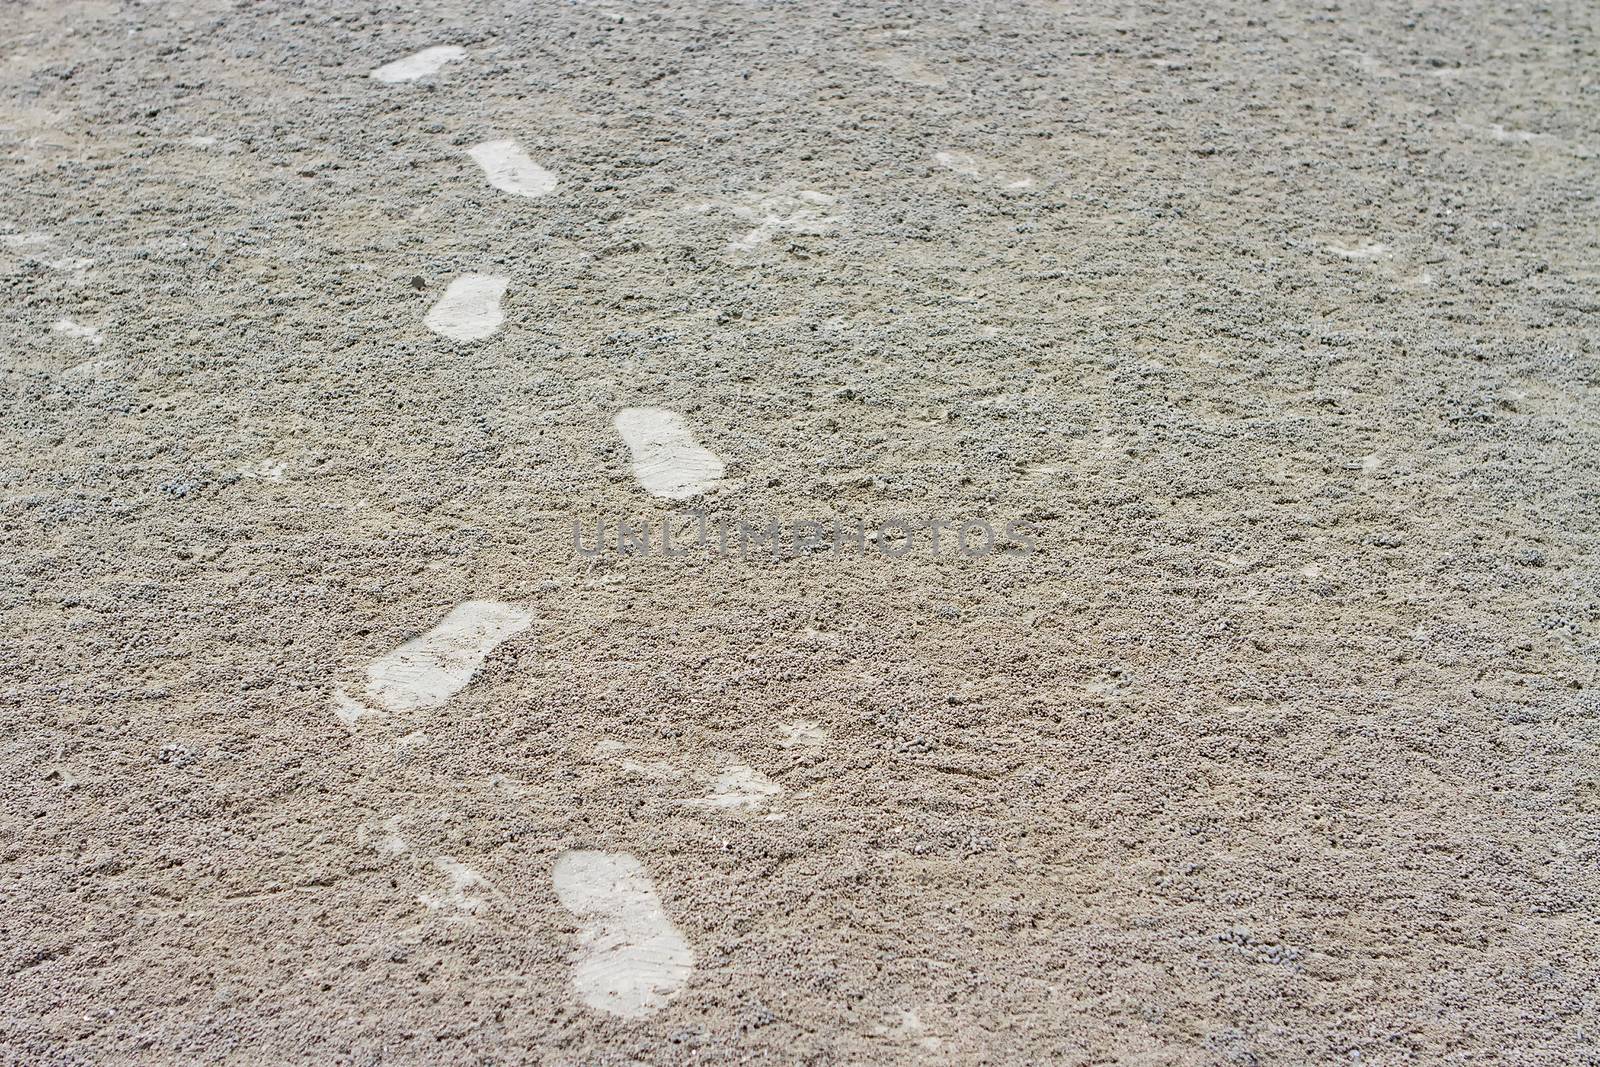 Footprint on cream sand